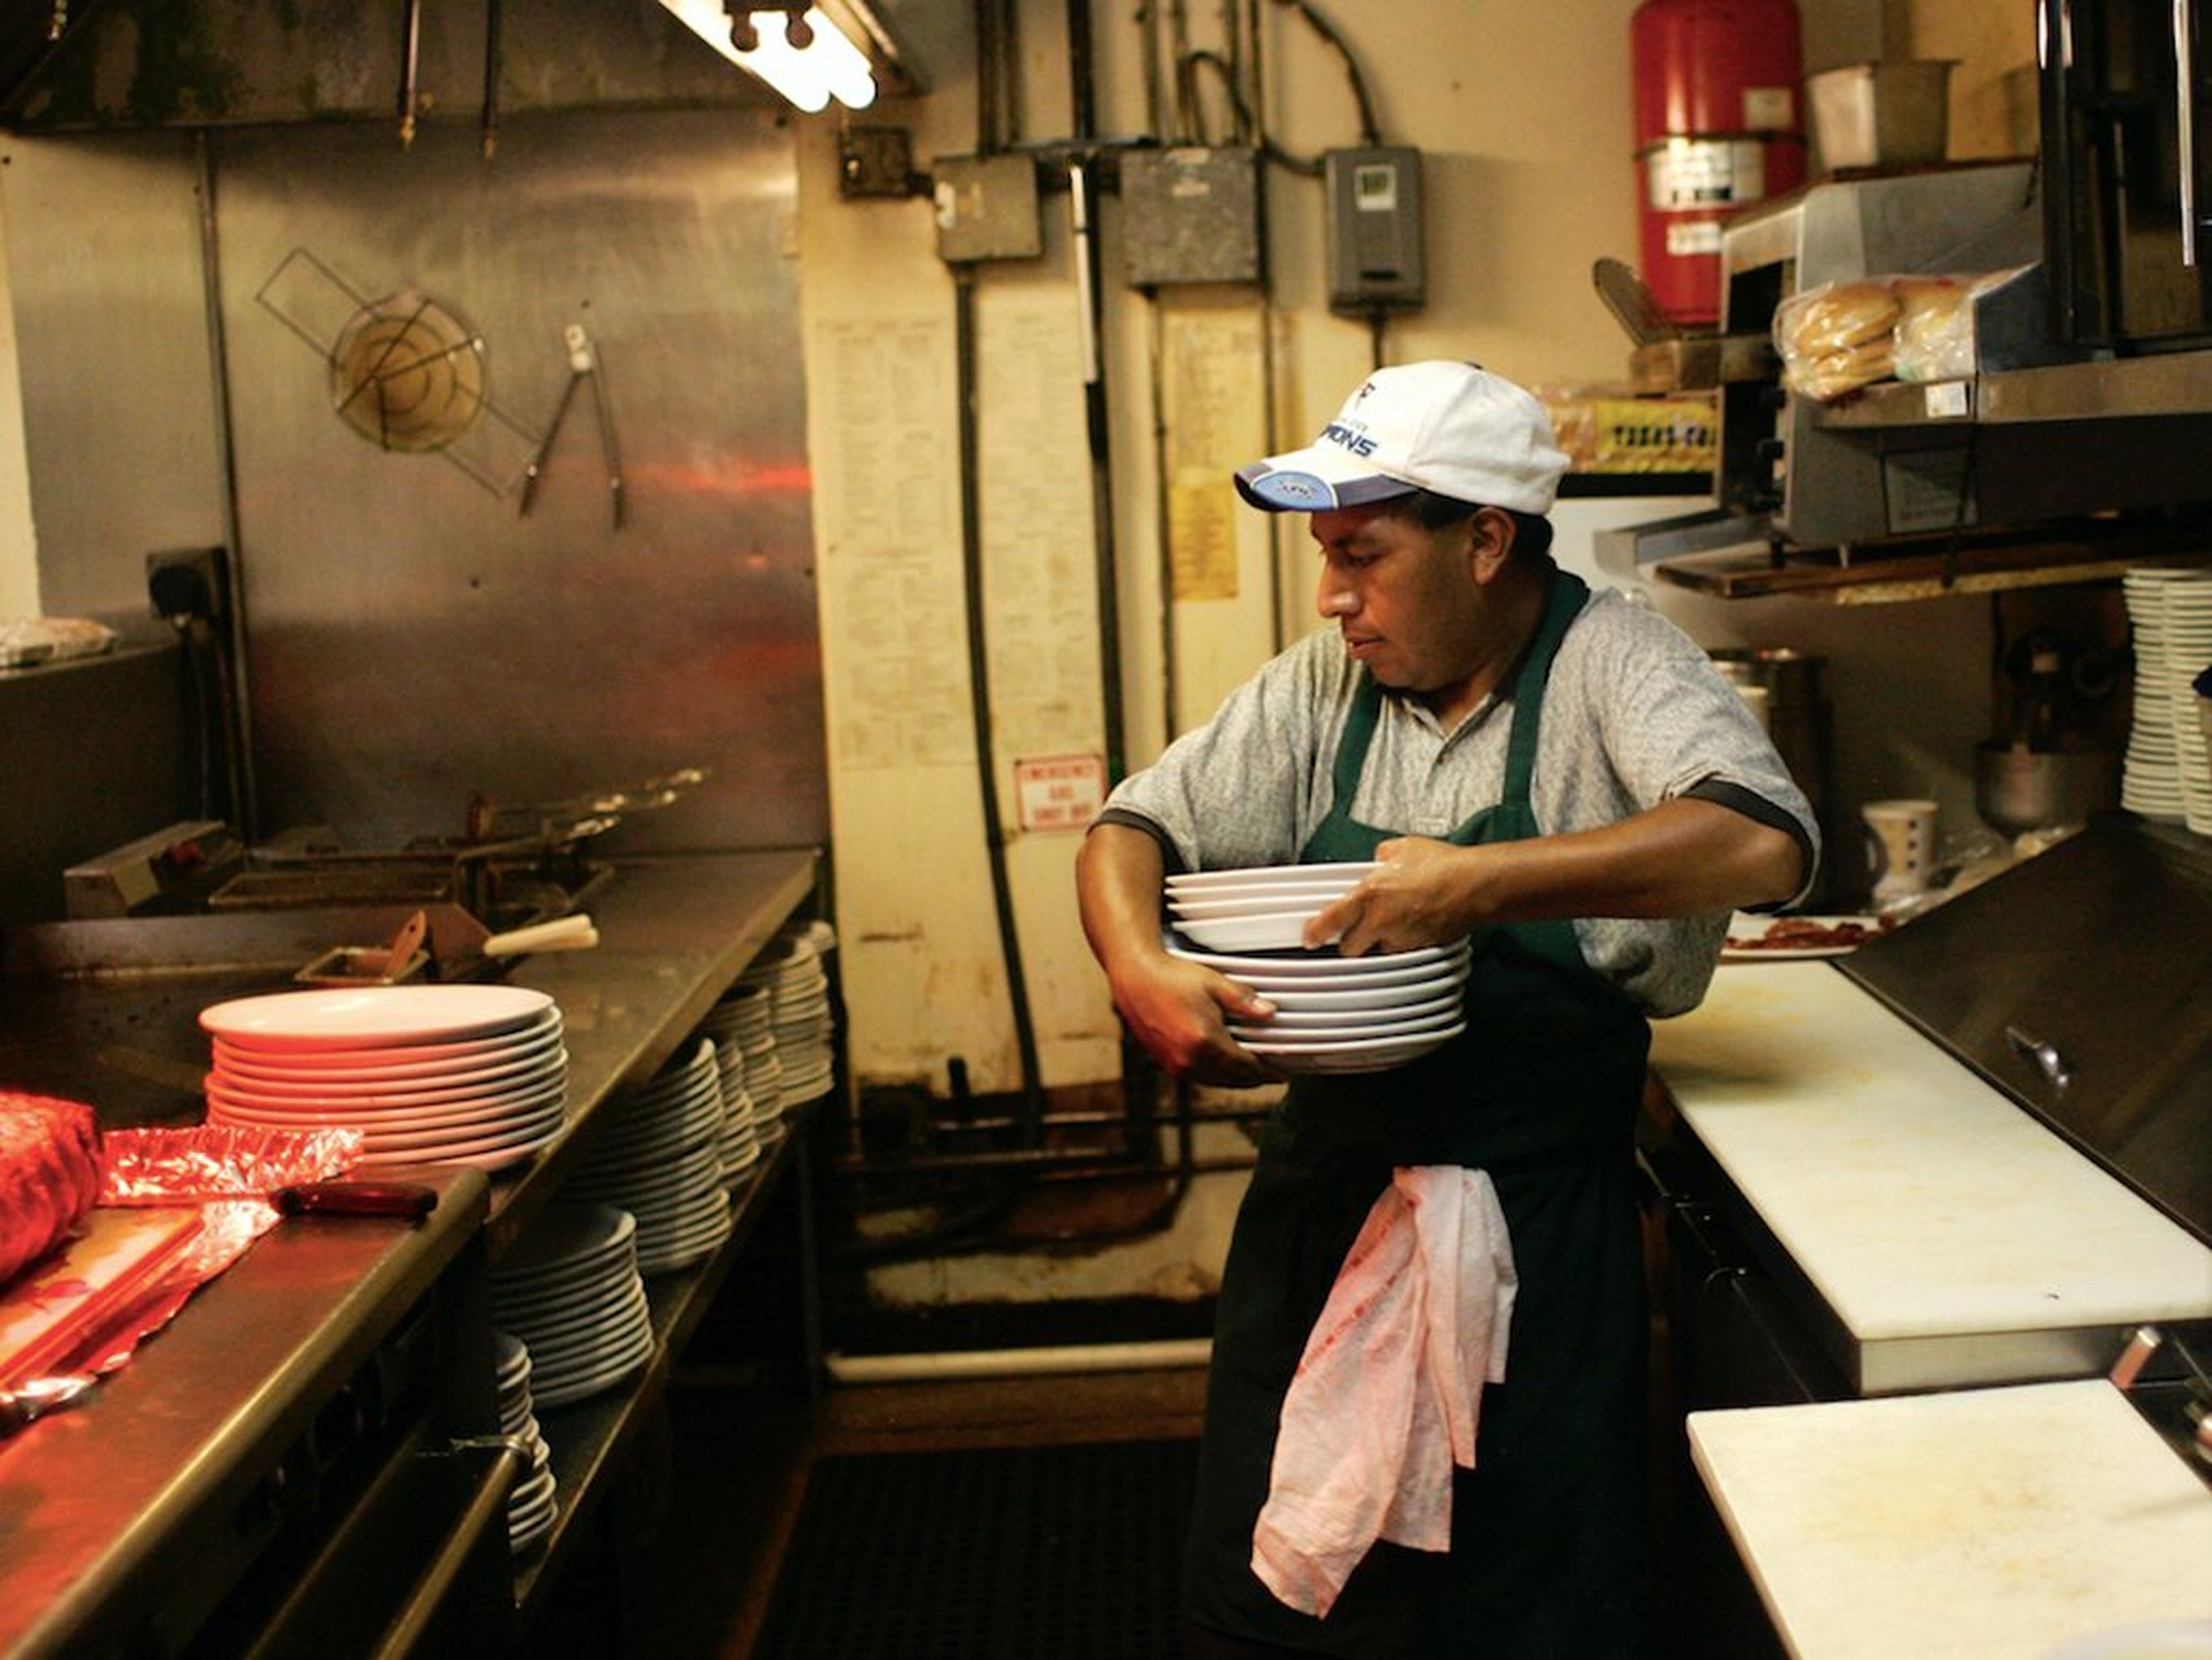 Persona de origen latino lava platatos en la cocina de un restaurante